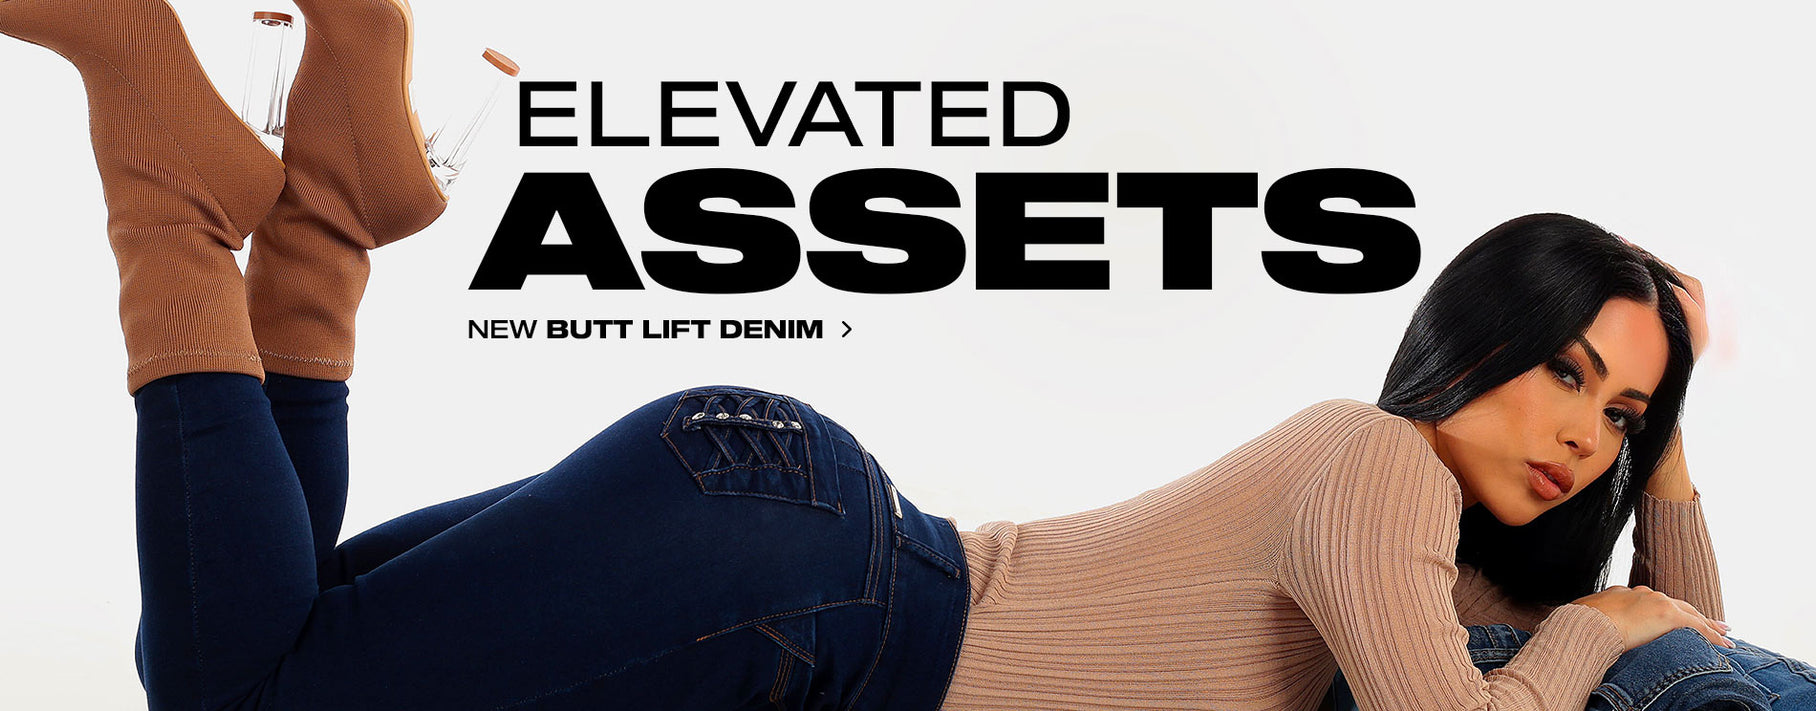 Elevated Assets: Shop New Butt Lift Denim